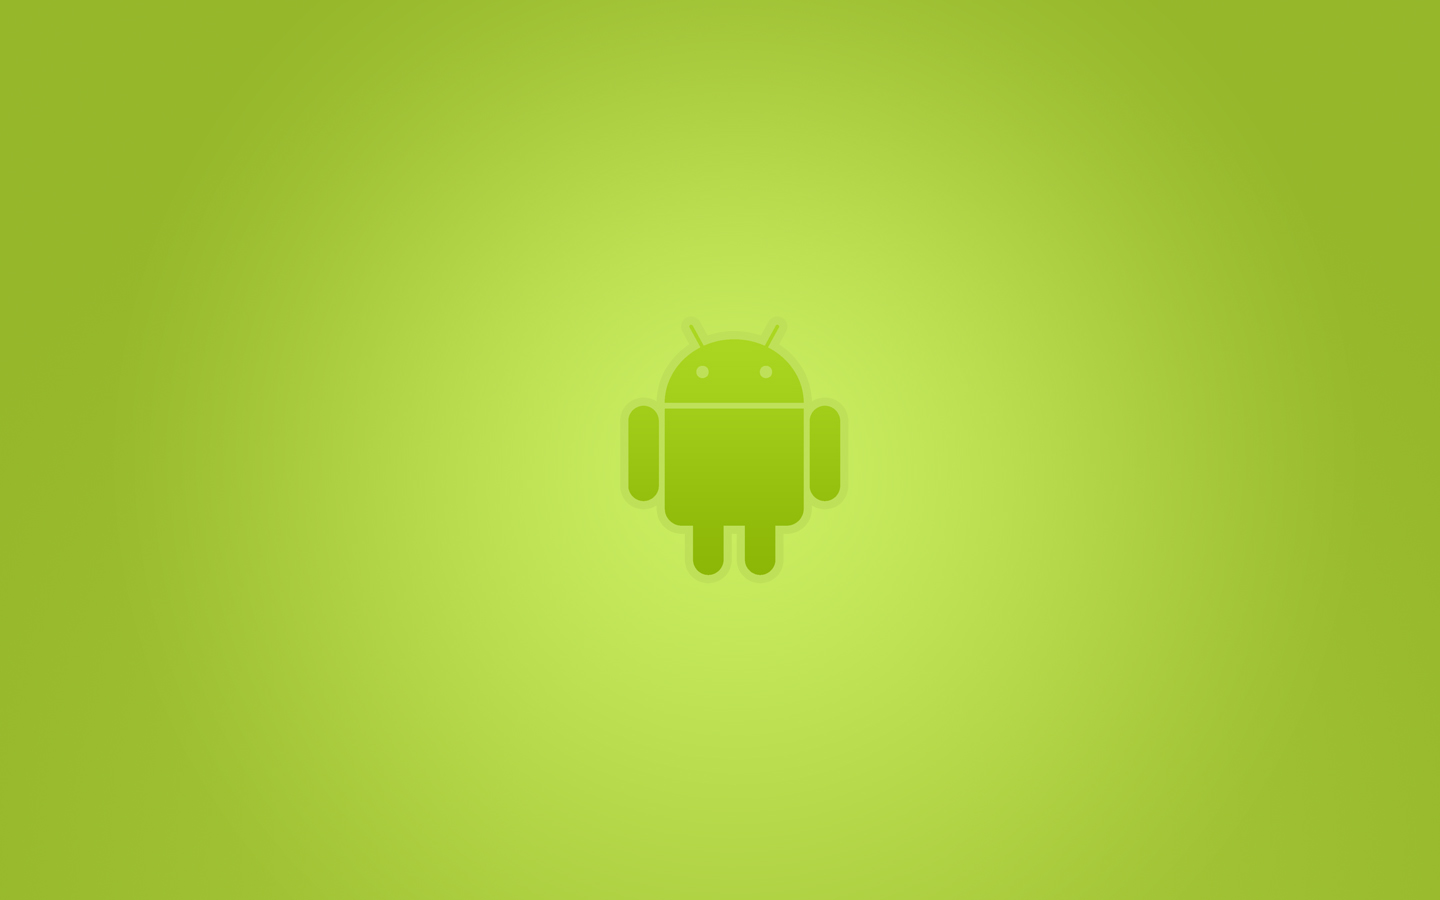 sfondo di google per android,verde,giallo,design,illustrazione,tecnologia